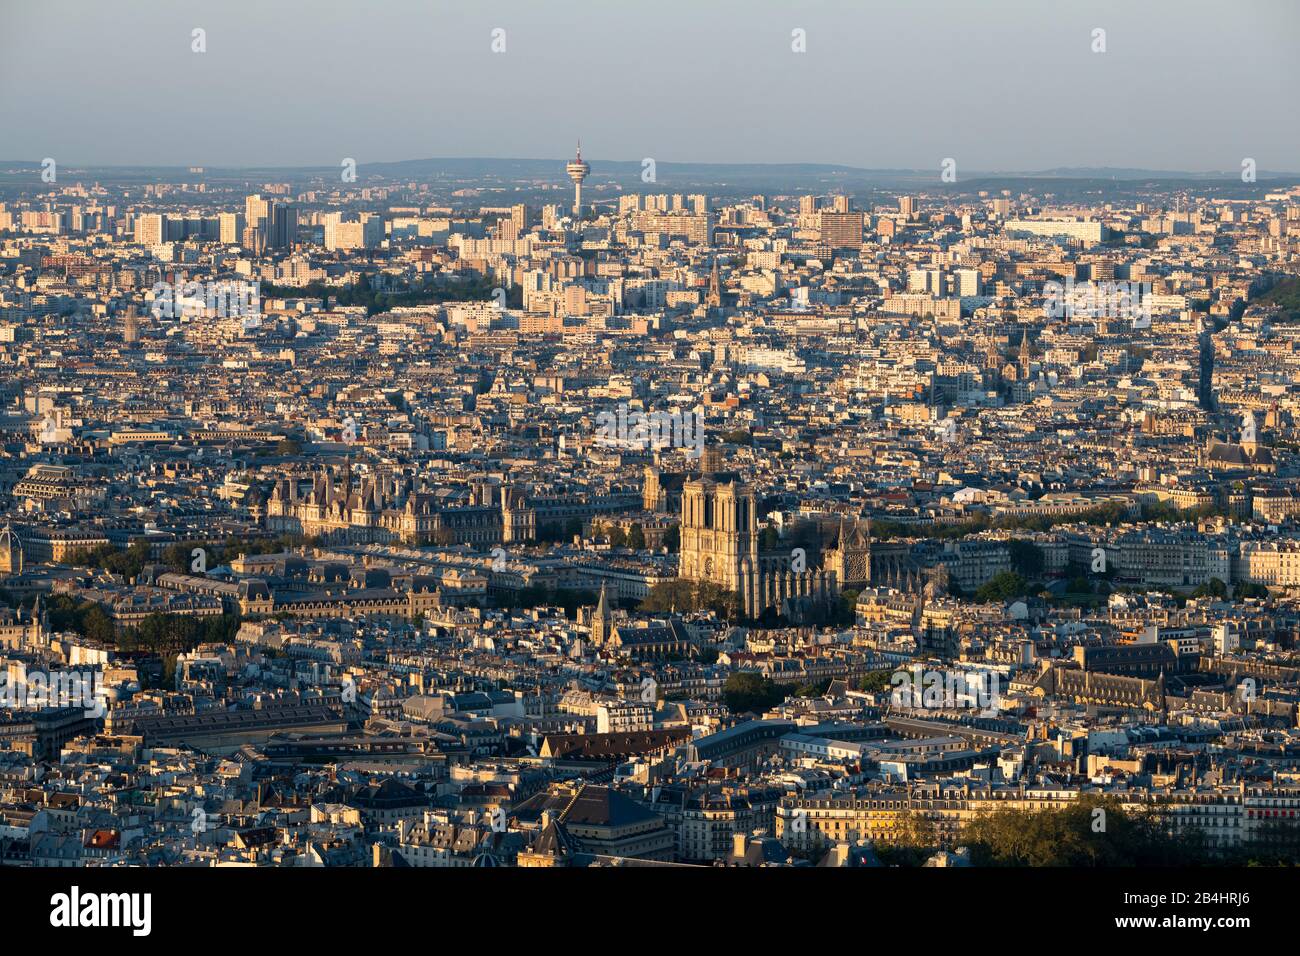 Die Kathedrale Notre Dame und das umliegende Stadtviertel vom Hochhaus Tour Montparnasse aus gesehen, Paris, Frankreich, Europa Stockfoto